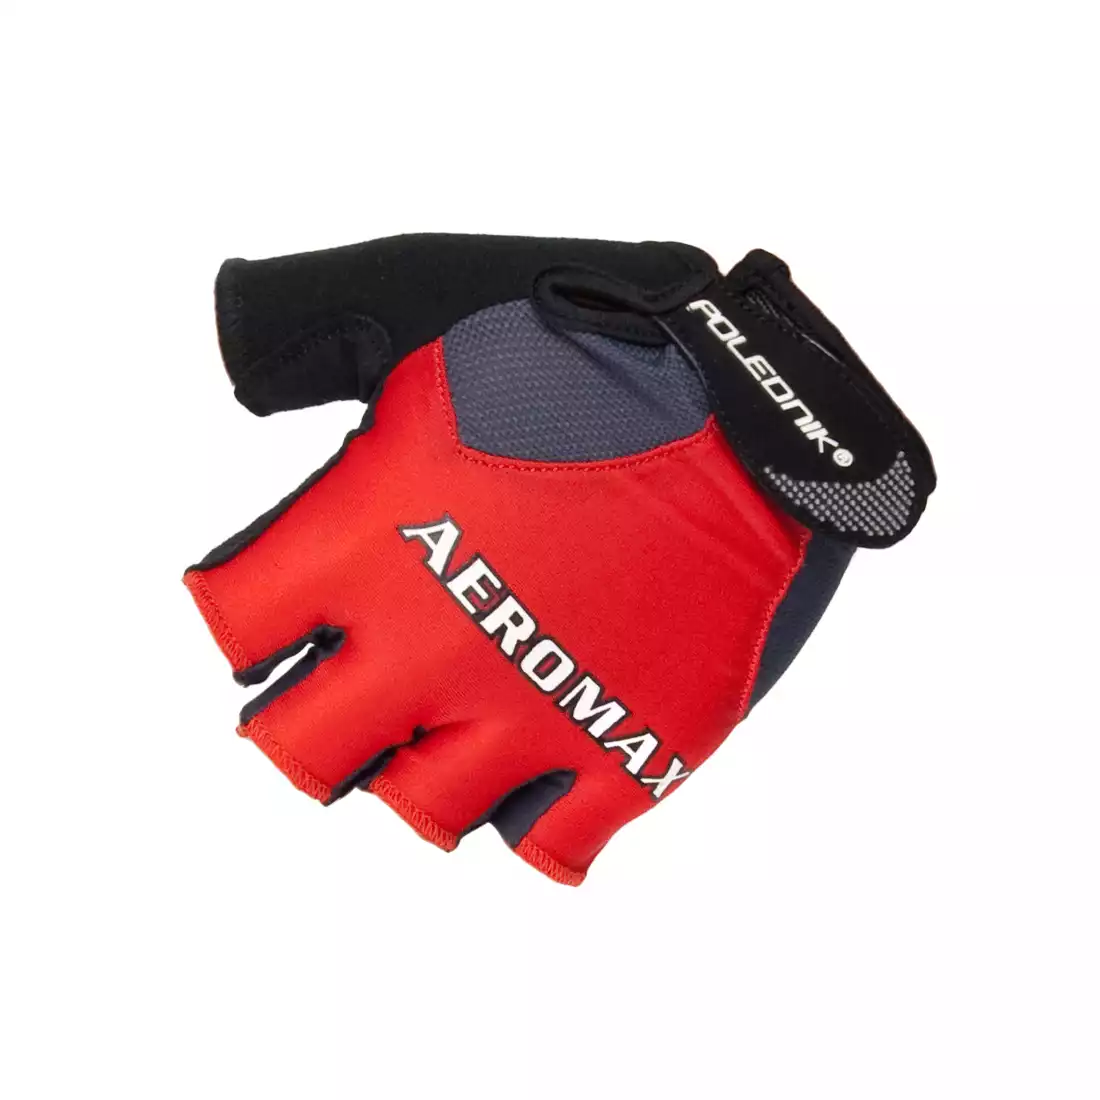 POLEDNIK AEROMAX rękawiczki rowerowe, kolor: Czerwony